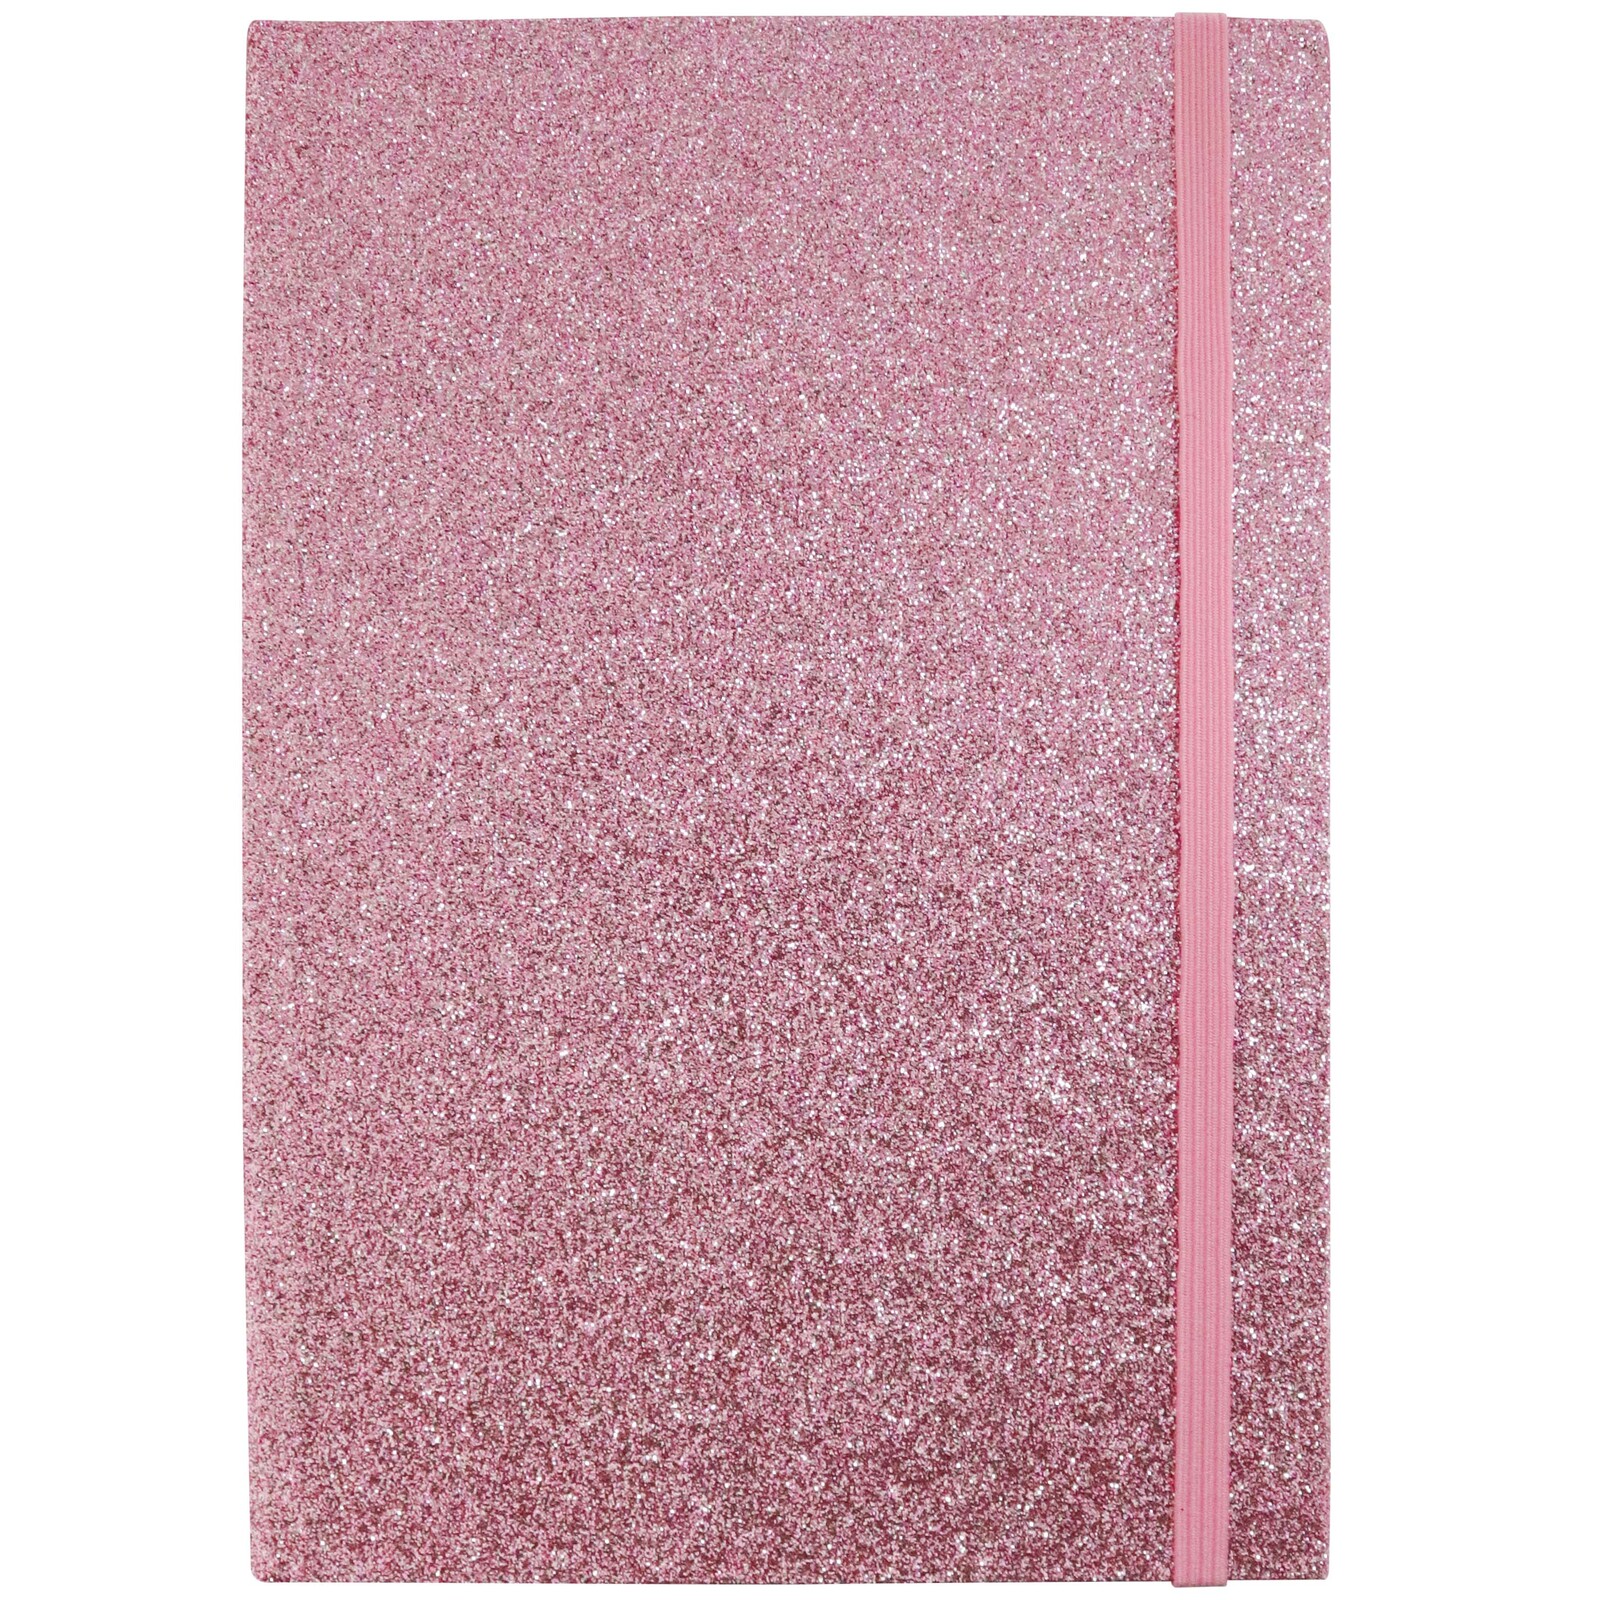 Notebook A5 Glitter Rose